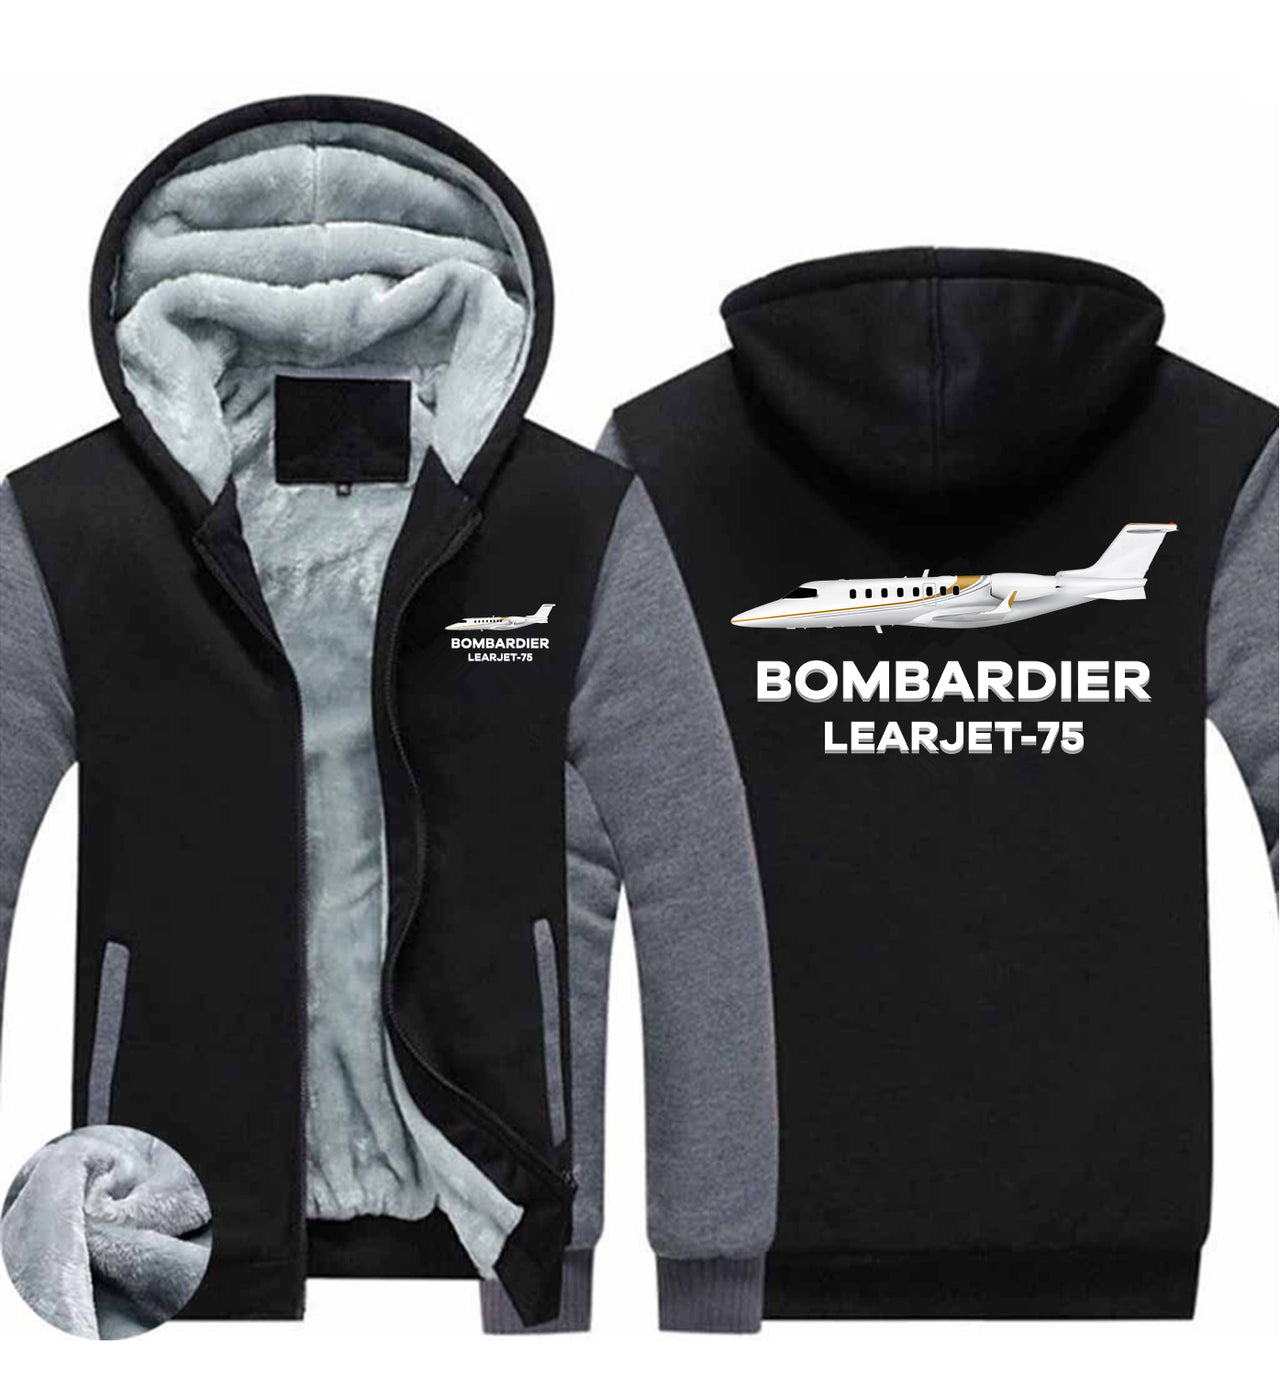 The Bombardier Learjet 75 Designed Zipped Sweatshirts